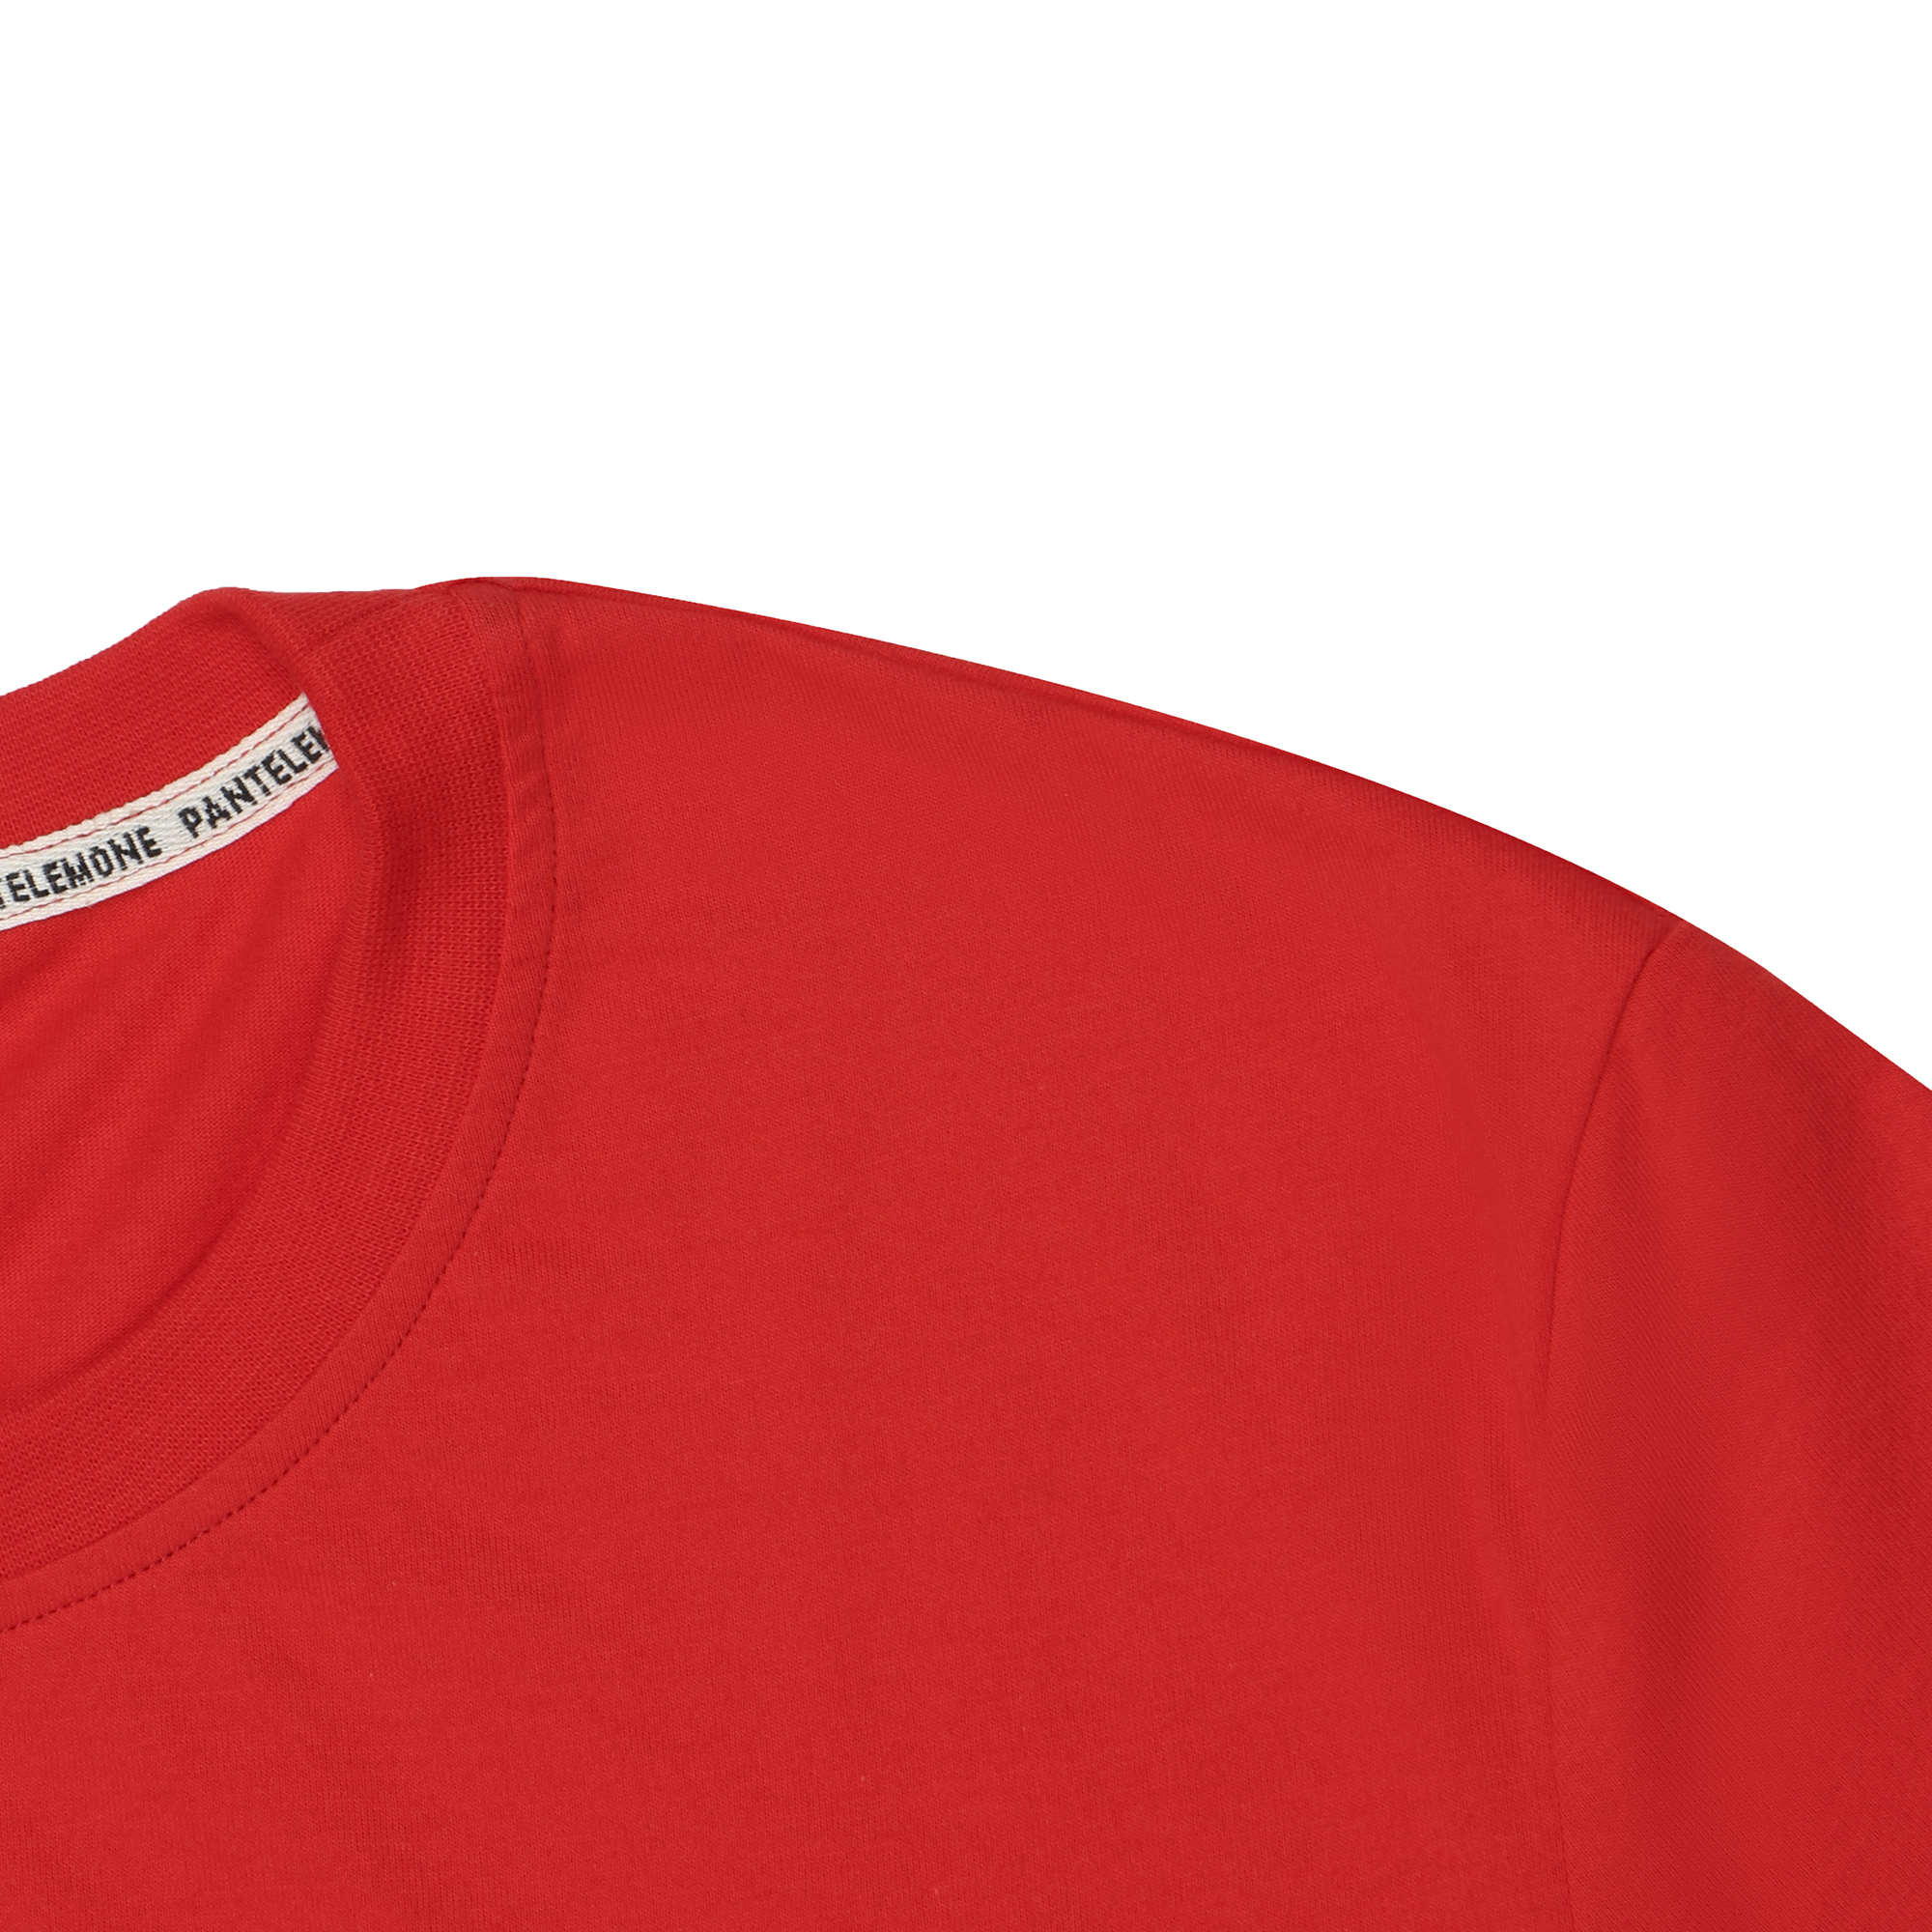 Мужская футболка Pantelemone MF-913 48 красная, цвет красный, размер 48 - фото 2